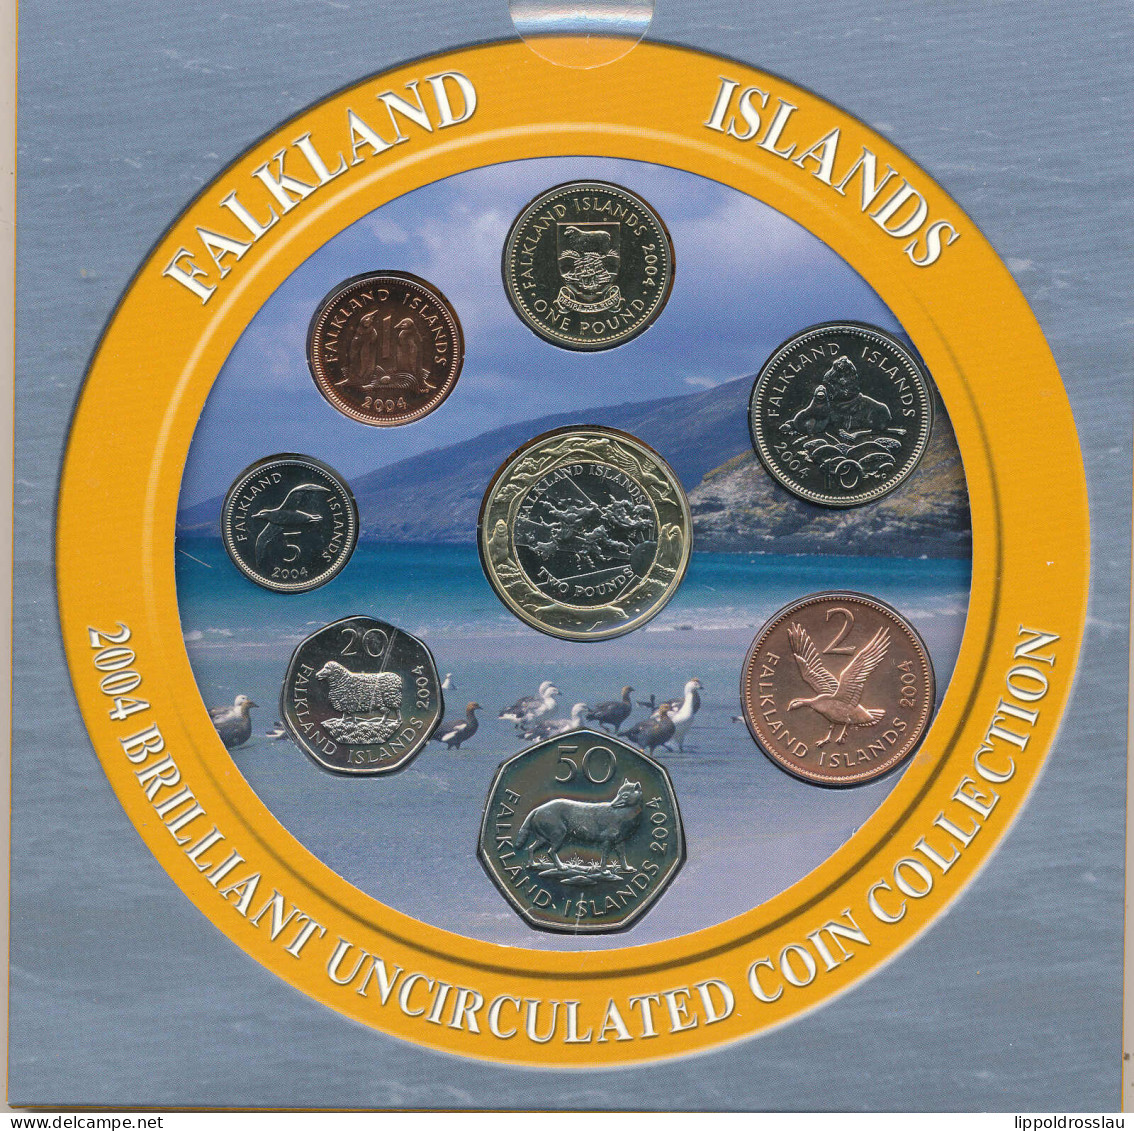 FALKLANDINSELN 2004 BRILLANT UNZIRKULIERTE MÜNZSAMMLUNG Set 8x Münzen 1 Penny ~ £ 2 Pfund BUNC - Malvinas